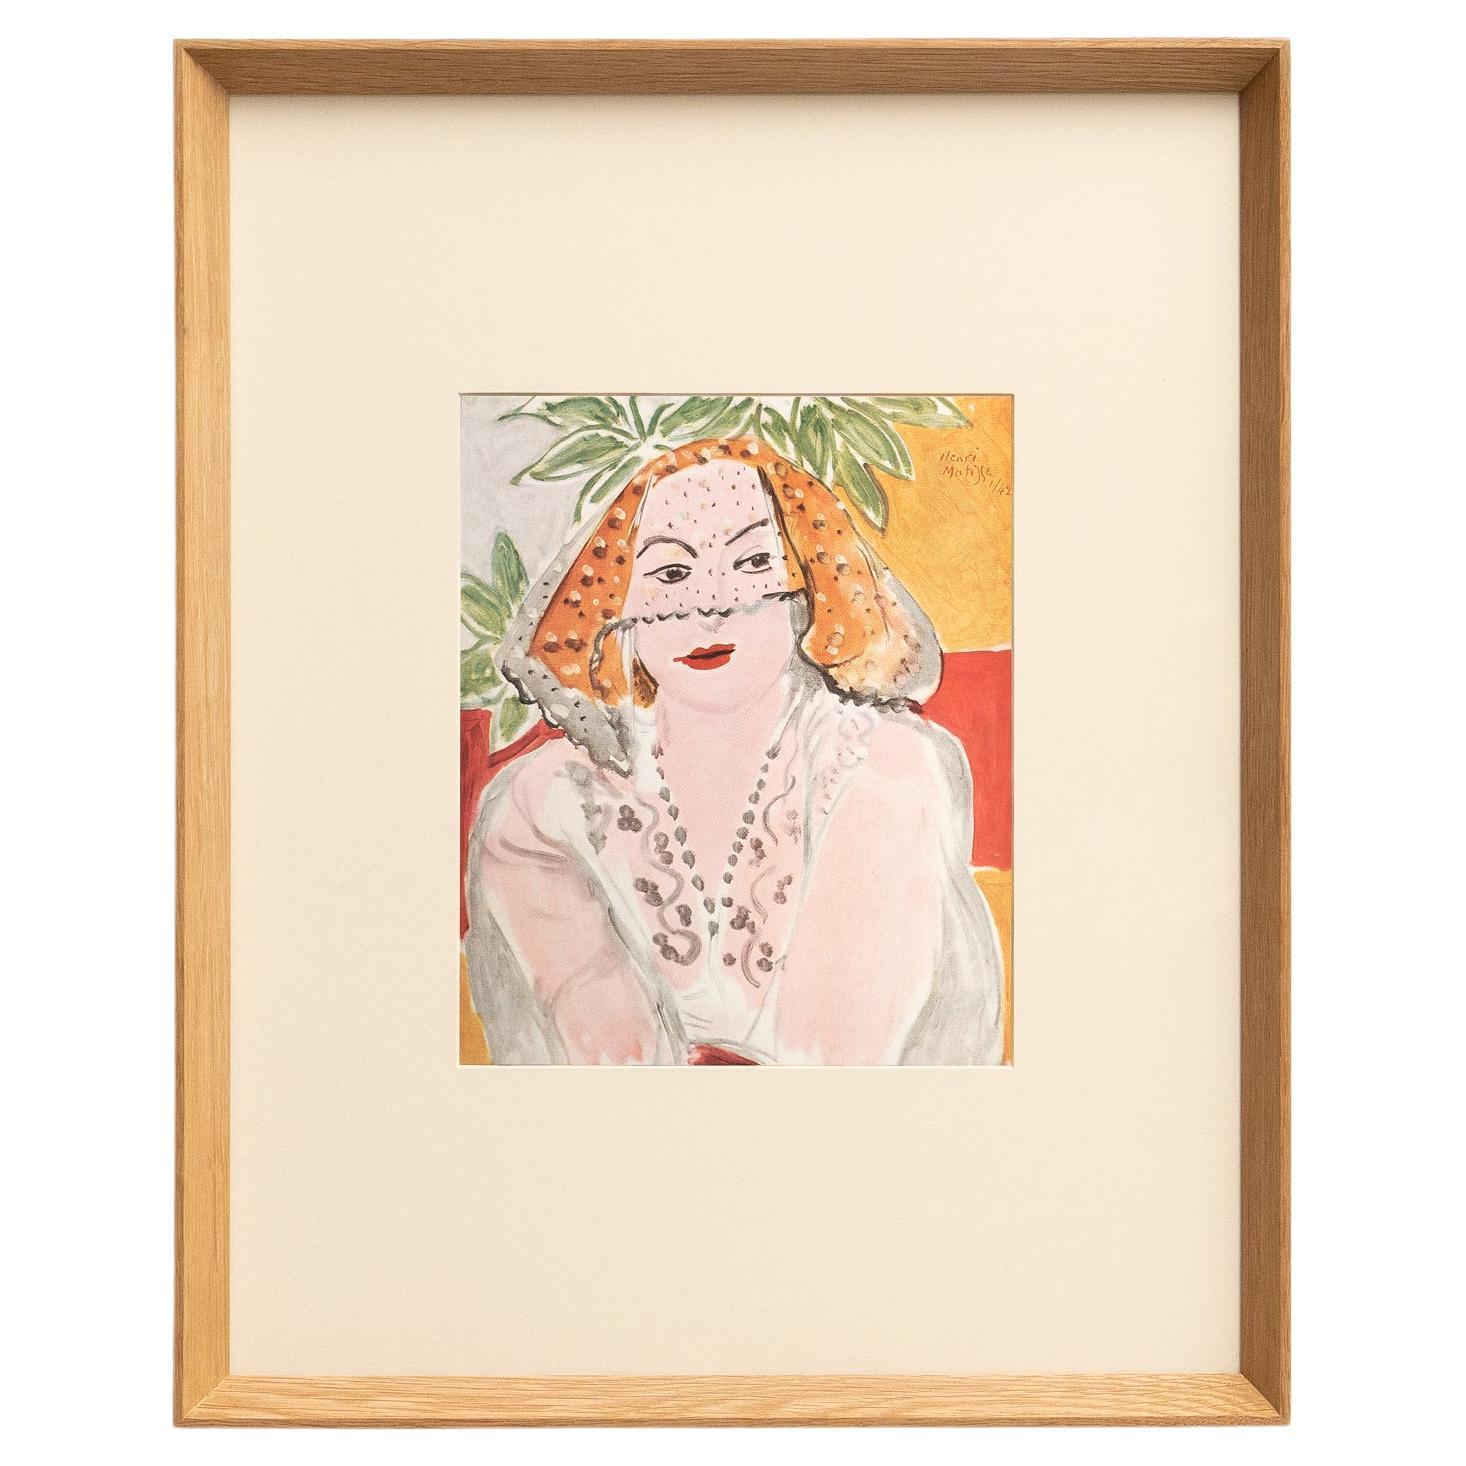 Lithographie rare : un aperçu de la maîtrise artistique de Matisse